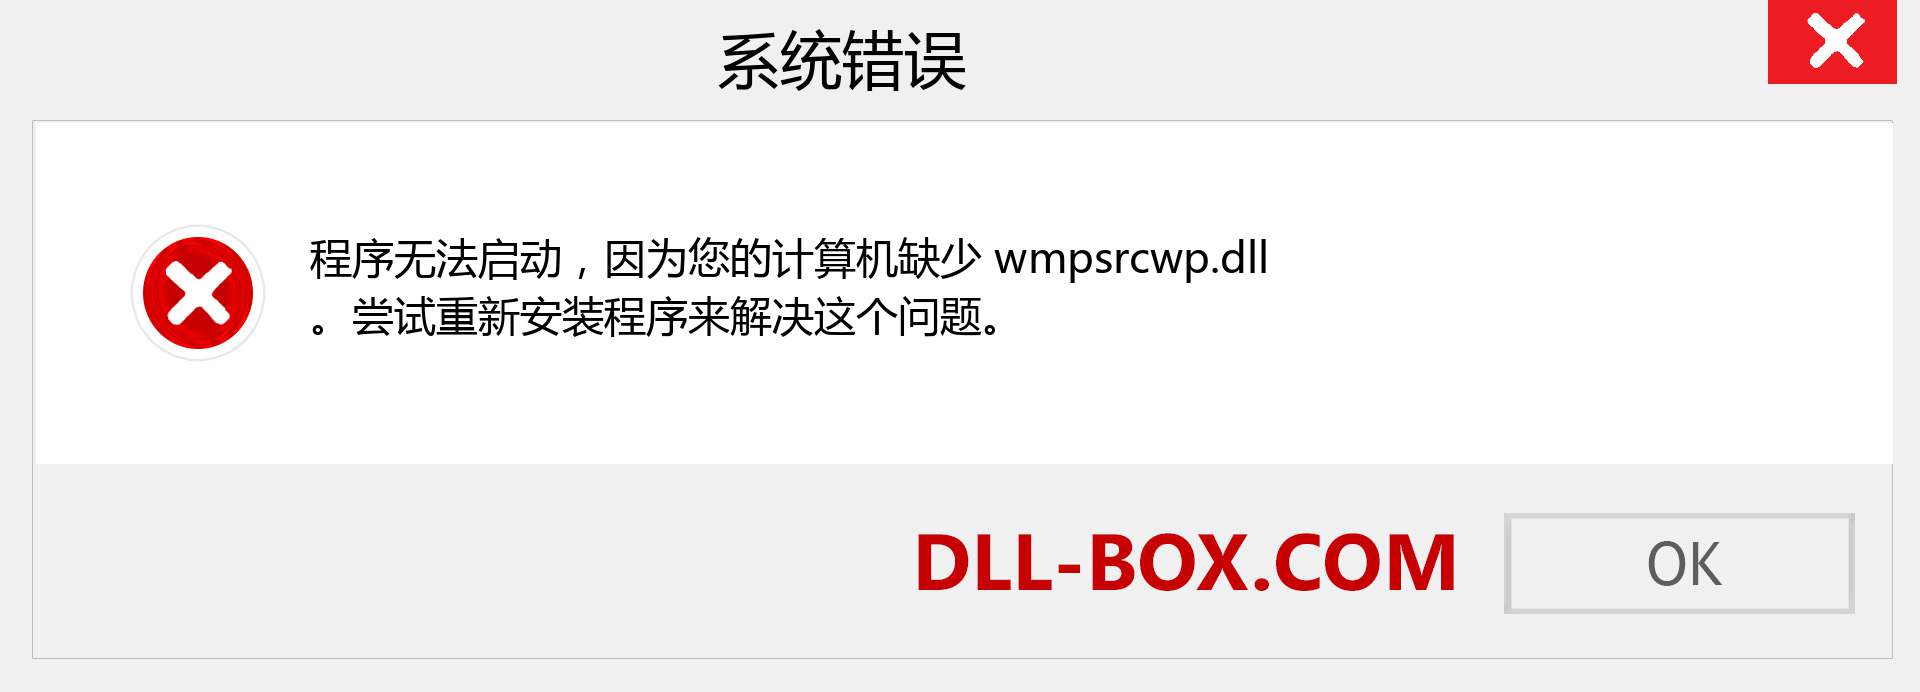 wmpsrcwp.dll 文件丢失？。 适用于 Windows 7、8、10 的下载 - 修复 Windows、照片、图像上的 wmpsrcwp dll 丢失错误